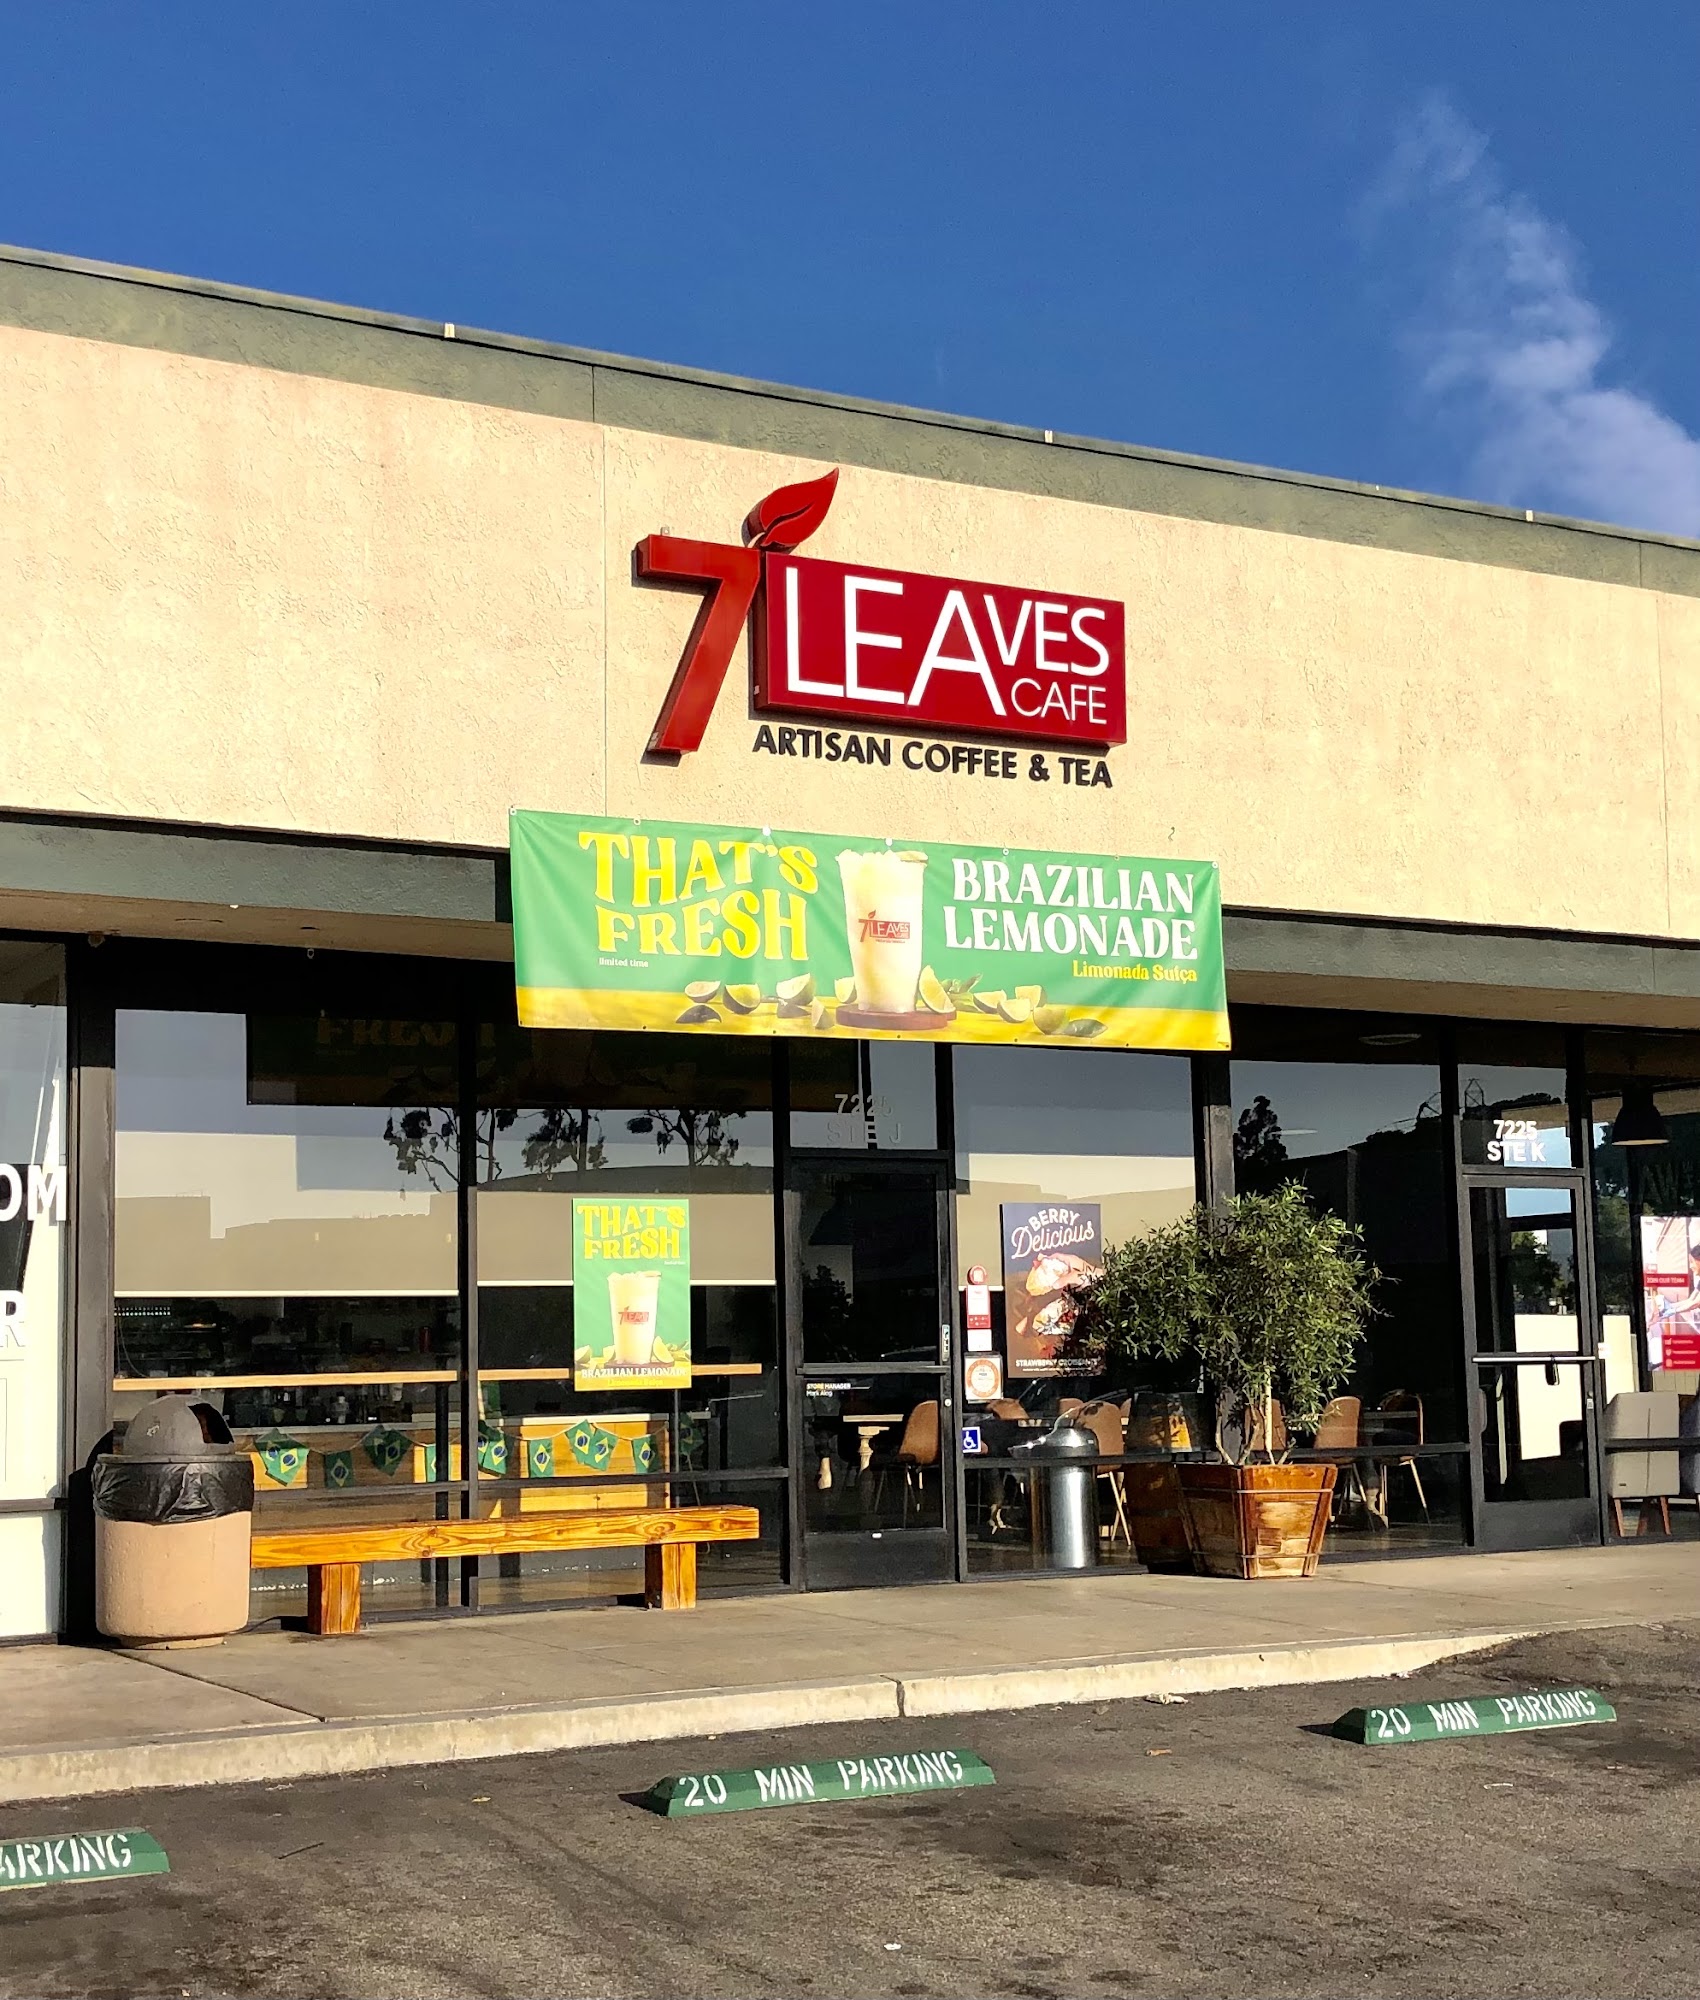 7 Leaves Cafe Huntington Beach